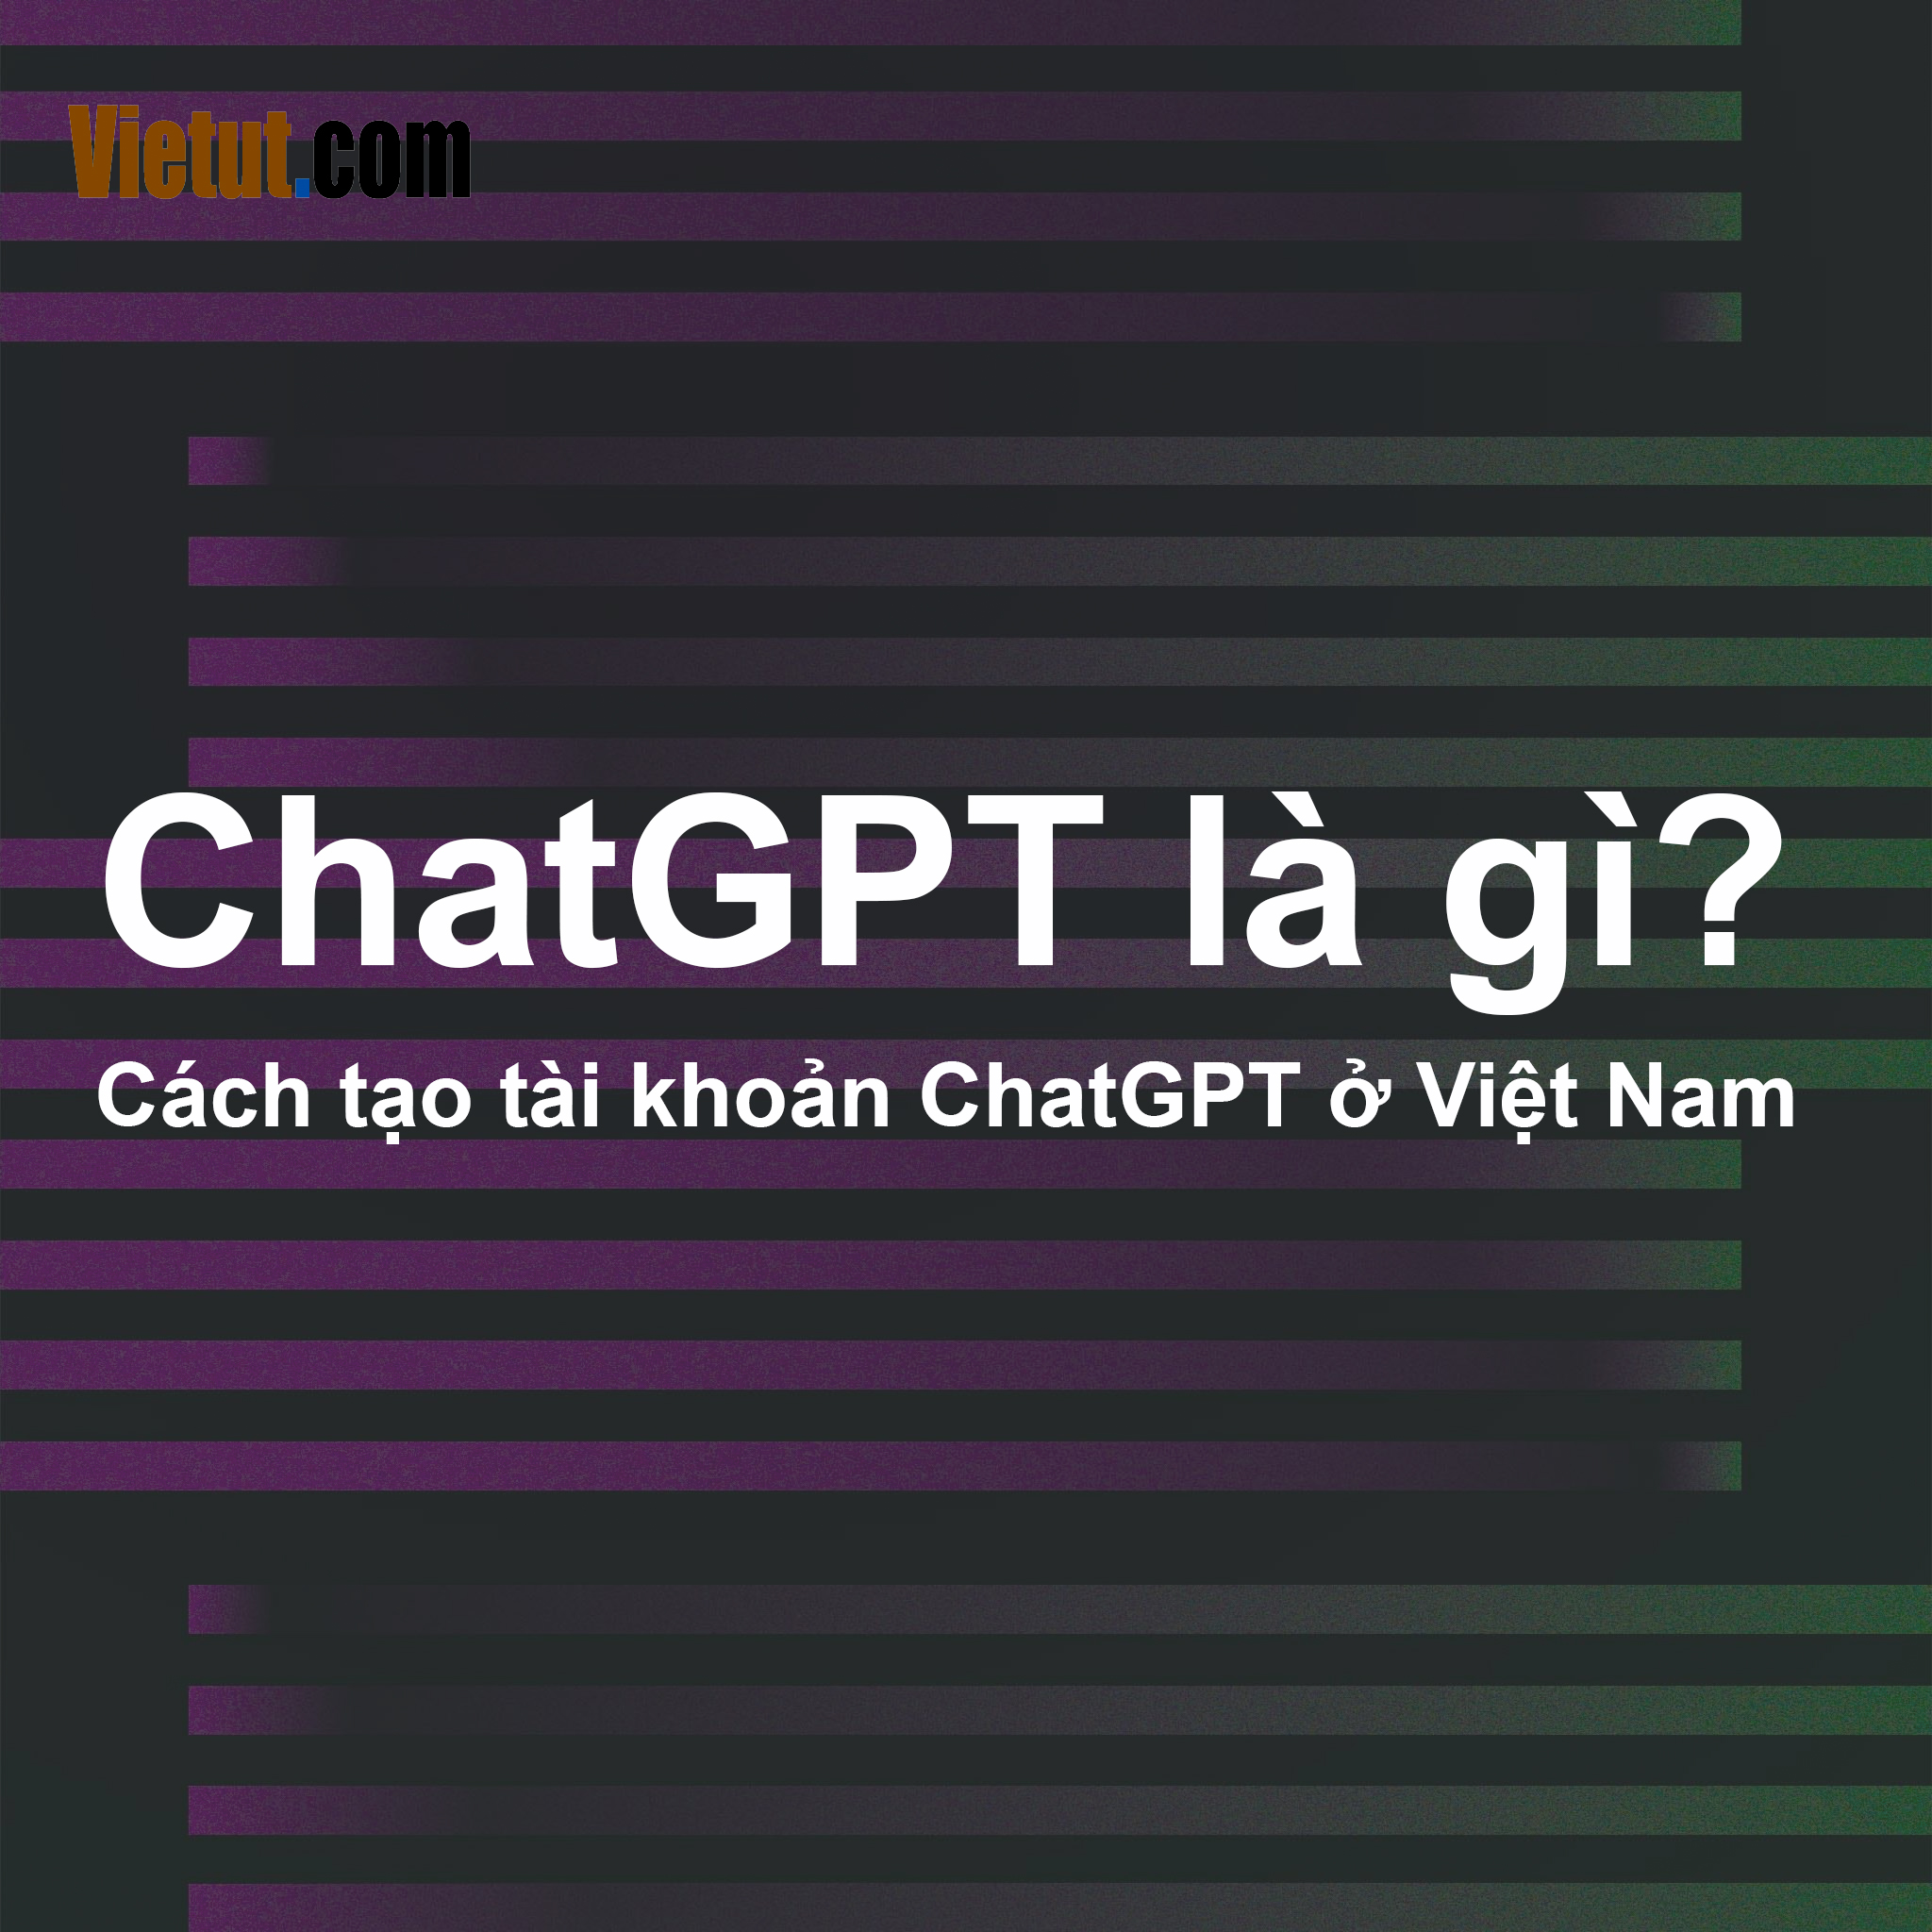 ChatGPT là gì? Cách đăng ký tài khoảng ChatGPT tại Việt Nam